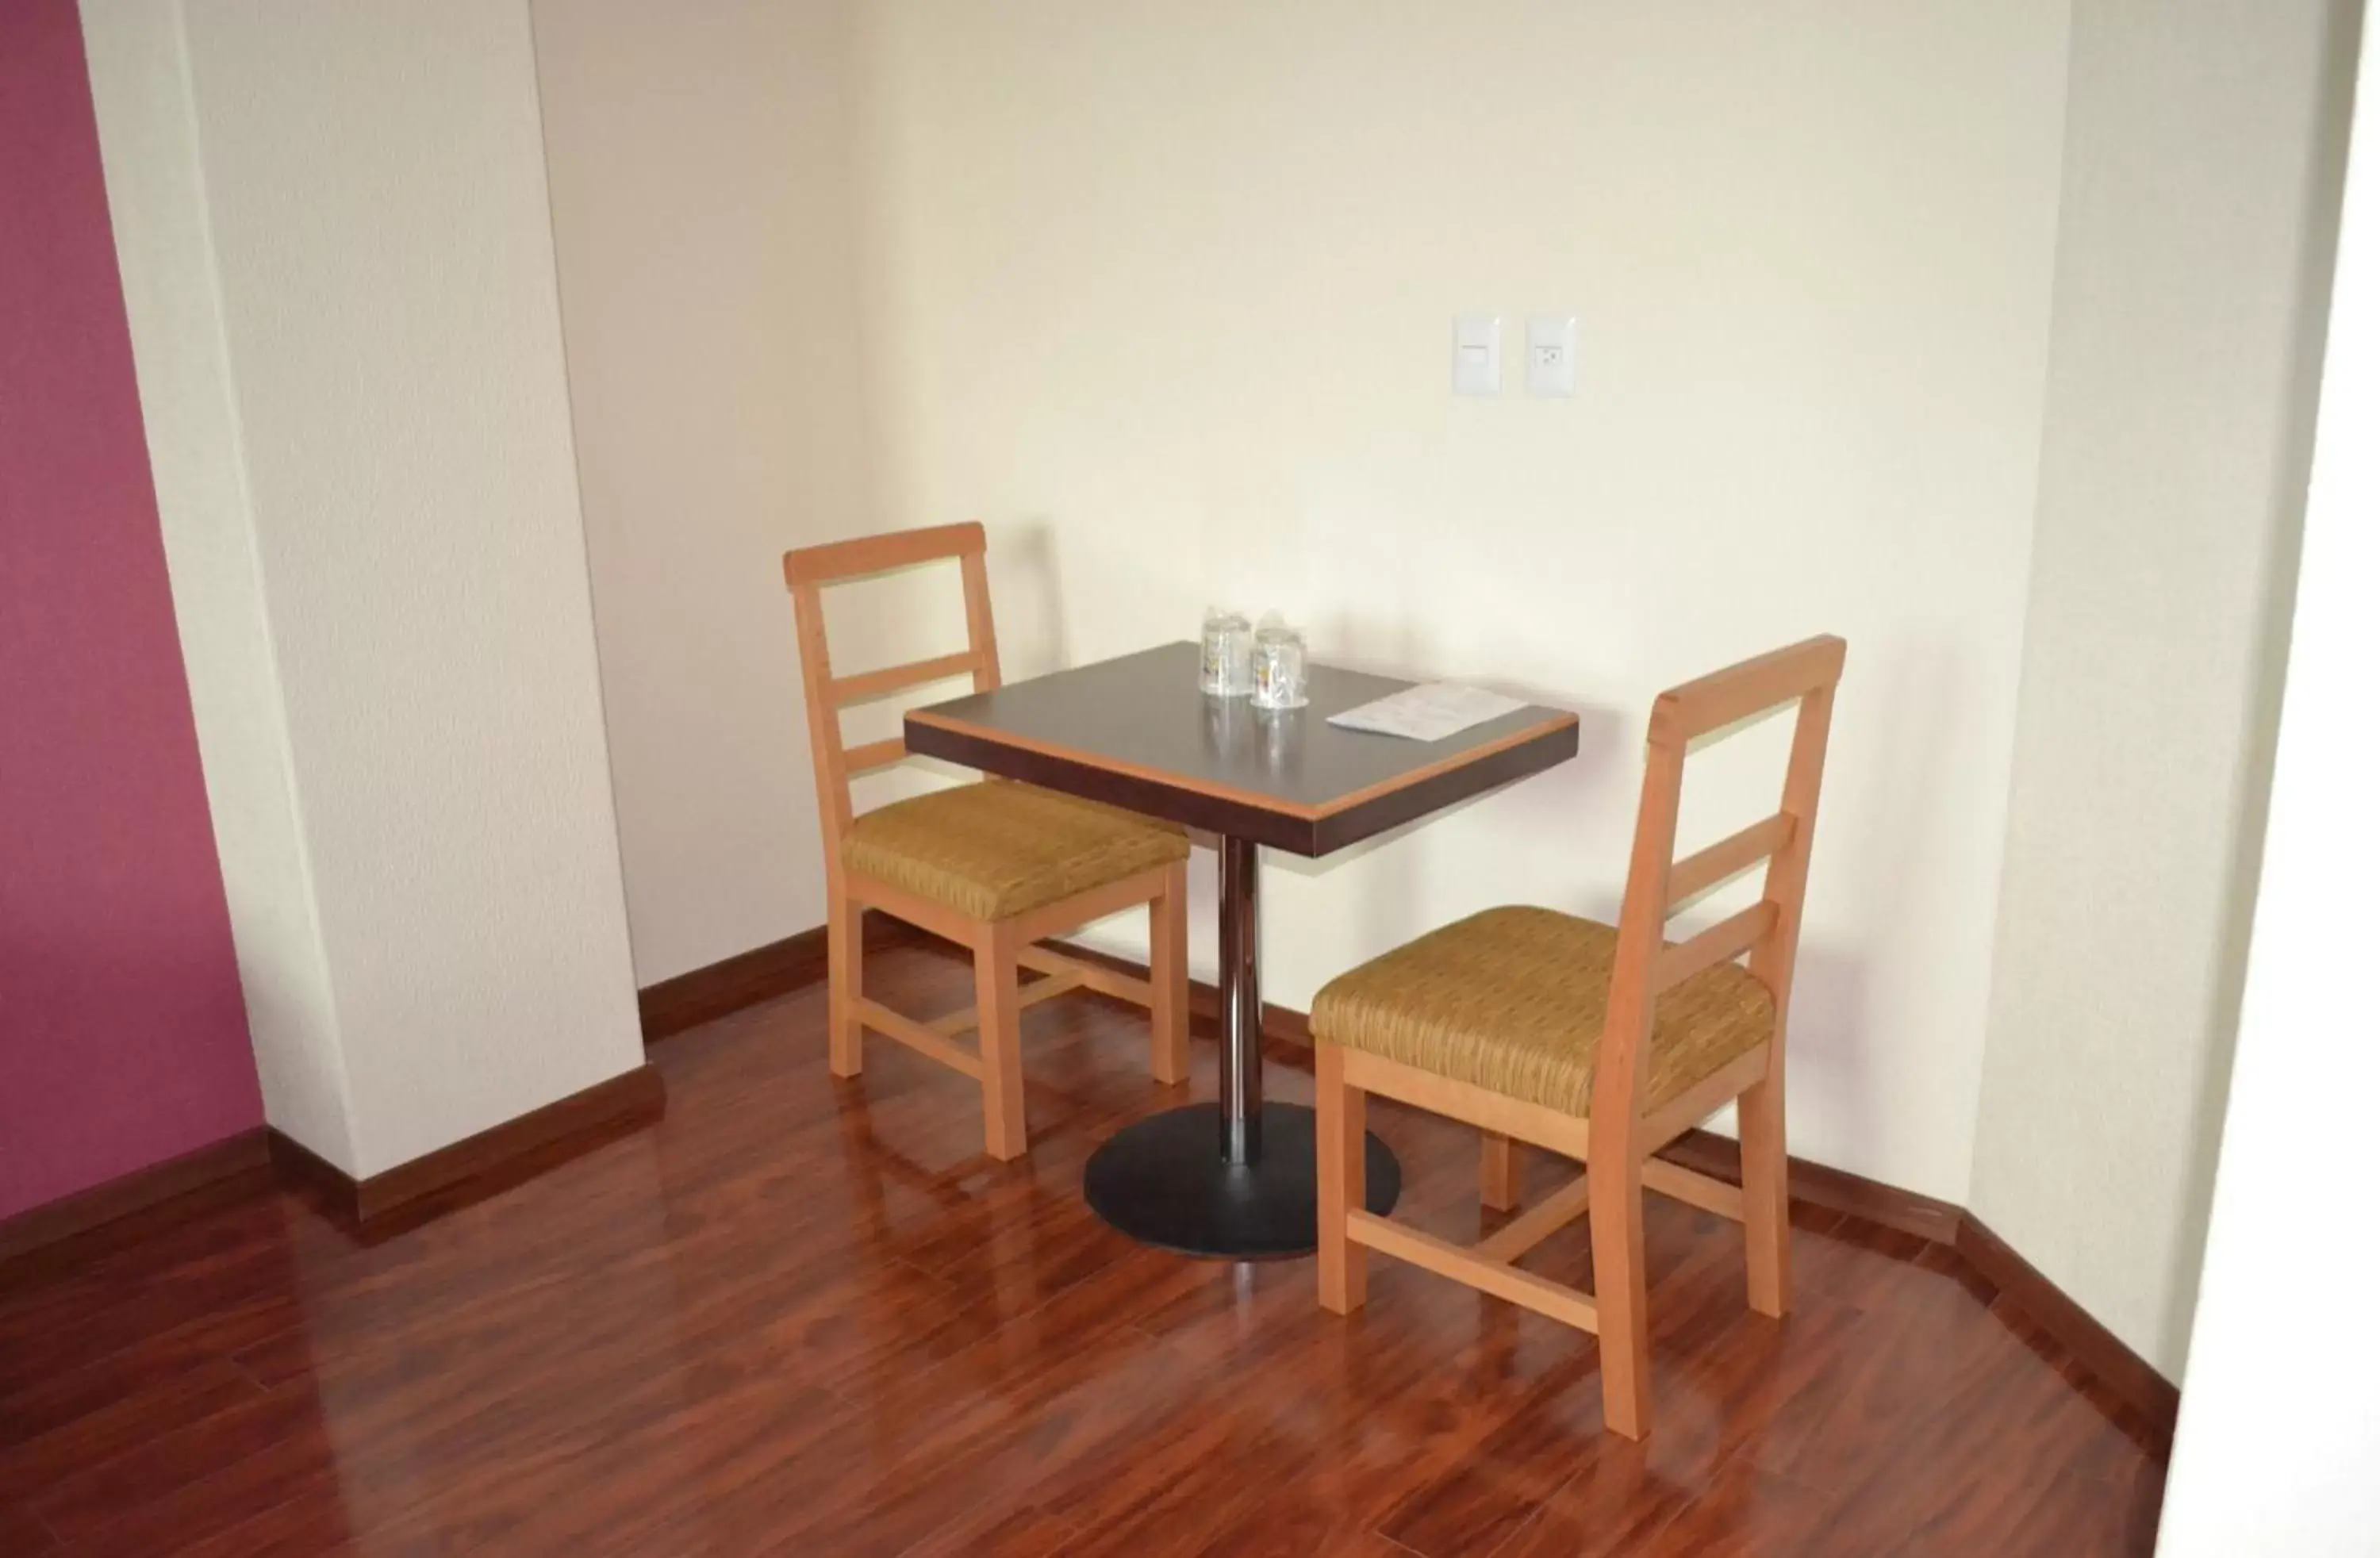 Bedroom, Dining Area in Hotel & Villas Panamá